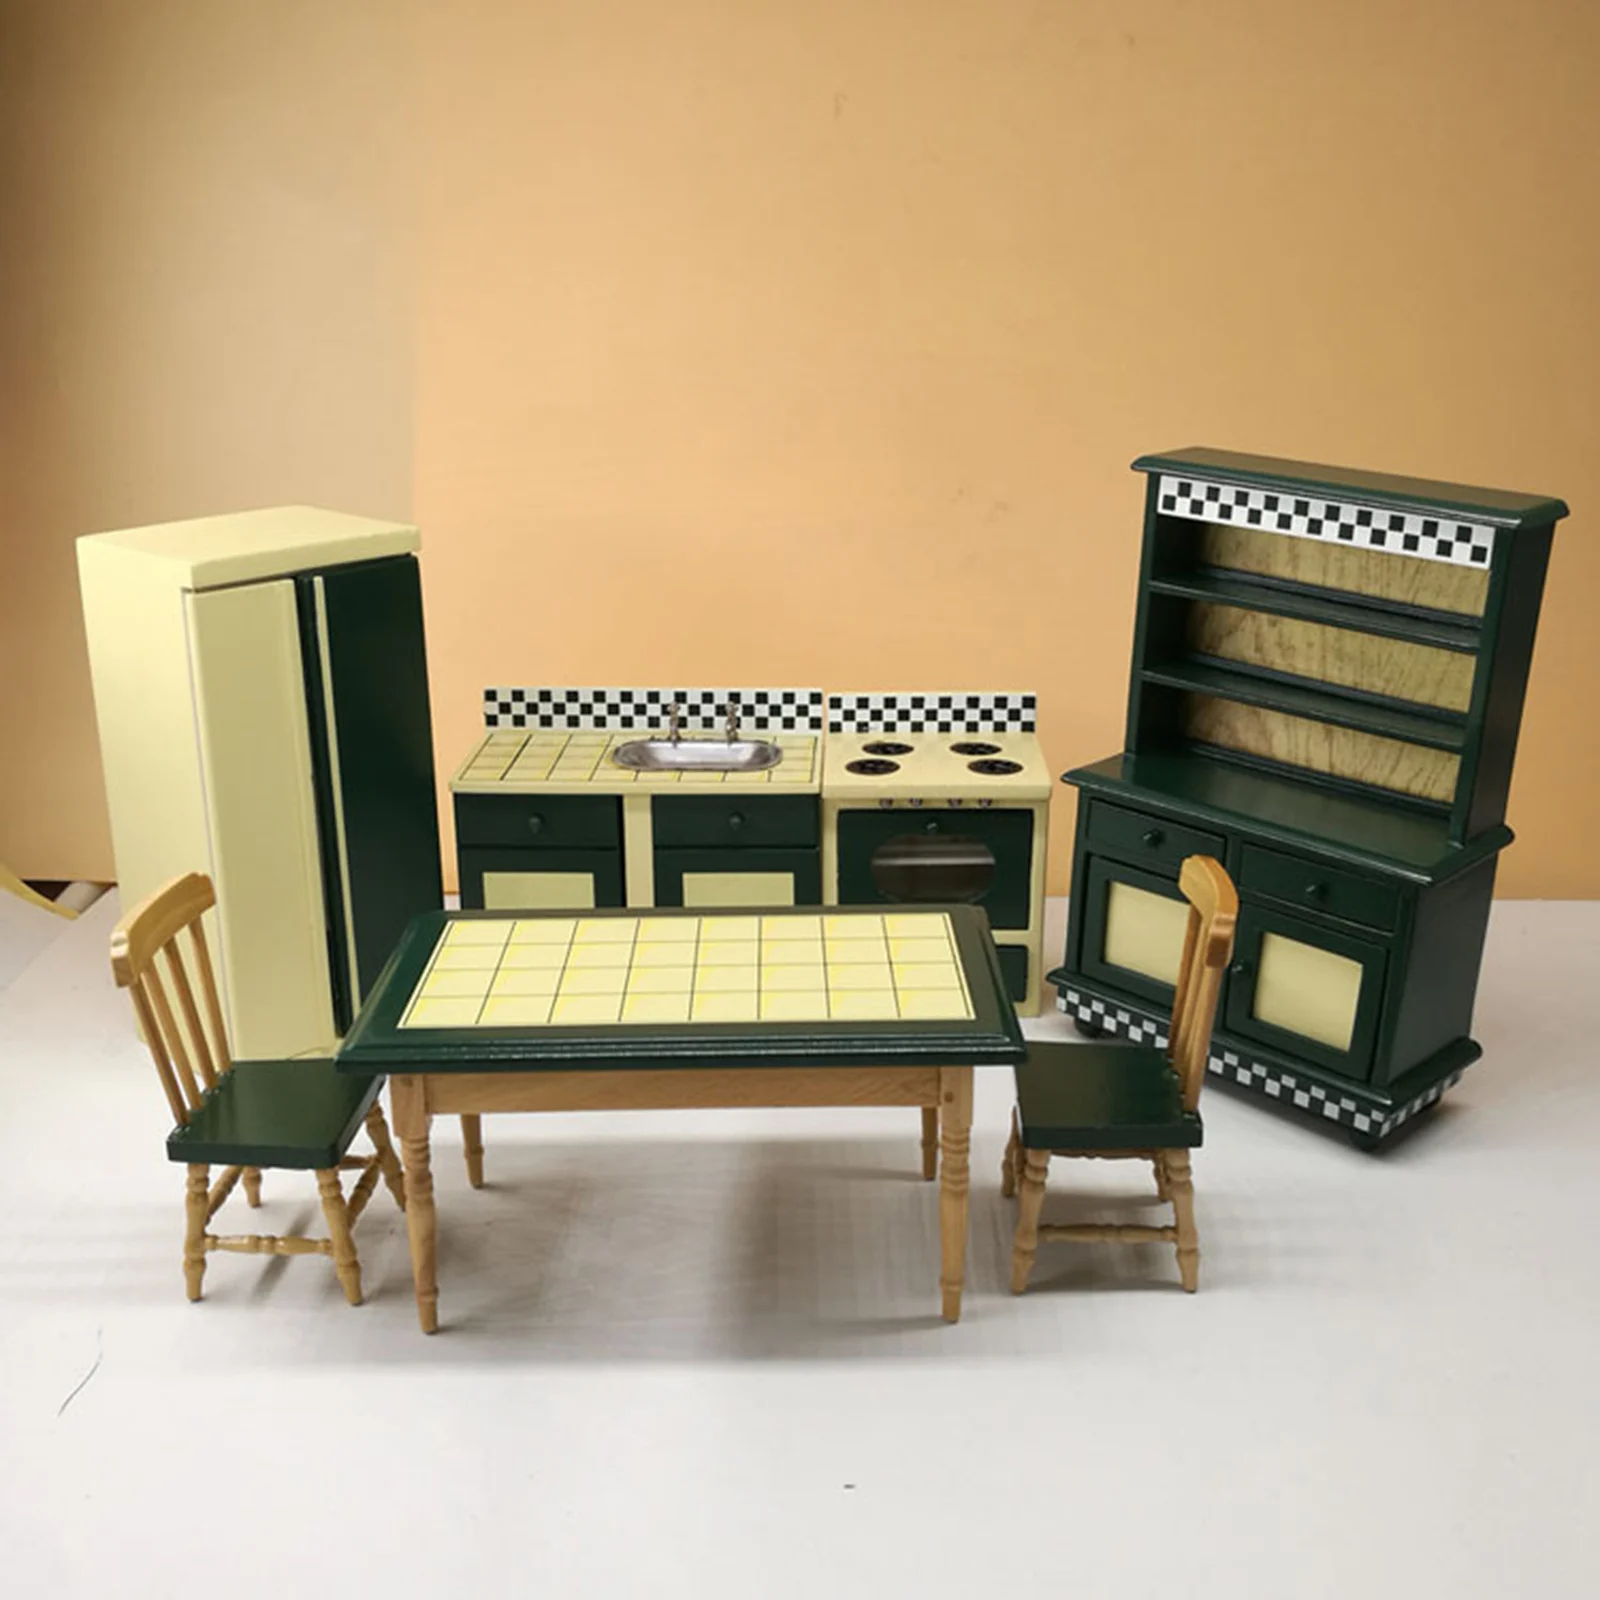 

Комплект миниатюрной кухонной мебели для кукольного домика, 7 шт., в масштабе 1:12, холодильник ручной работы, буфет, стол, аксессуары для кукол...